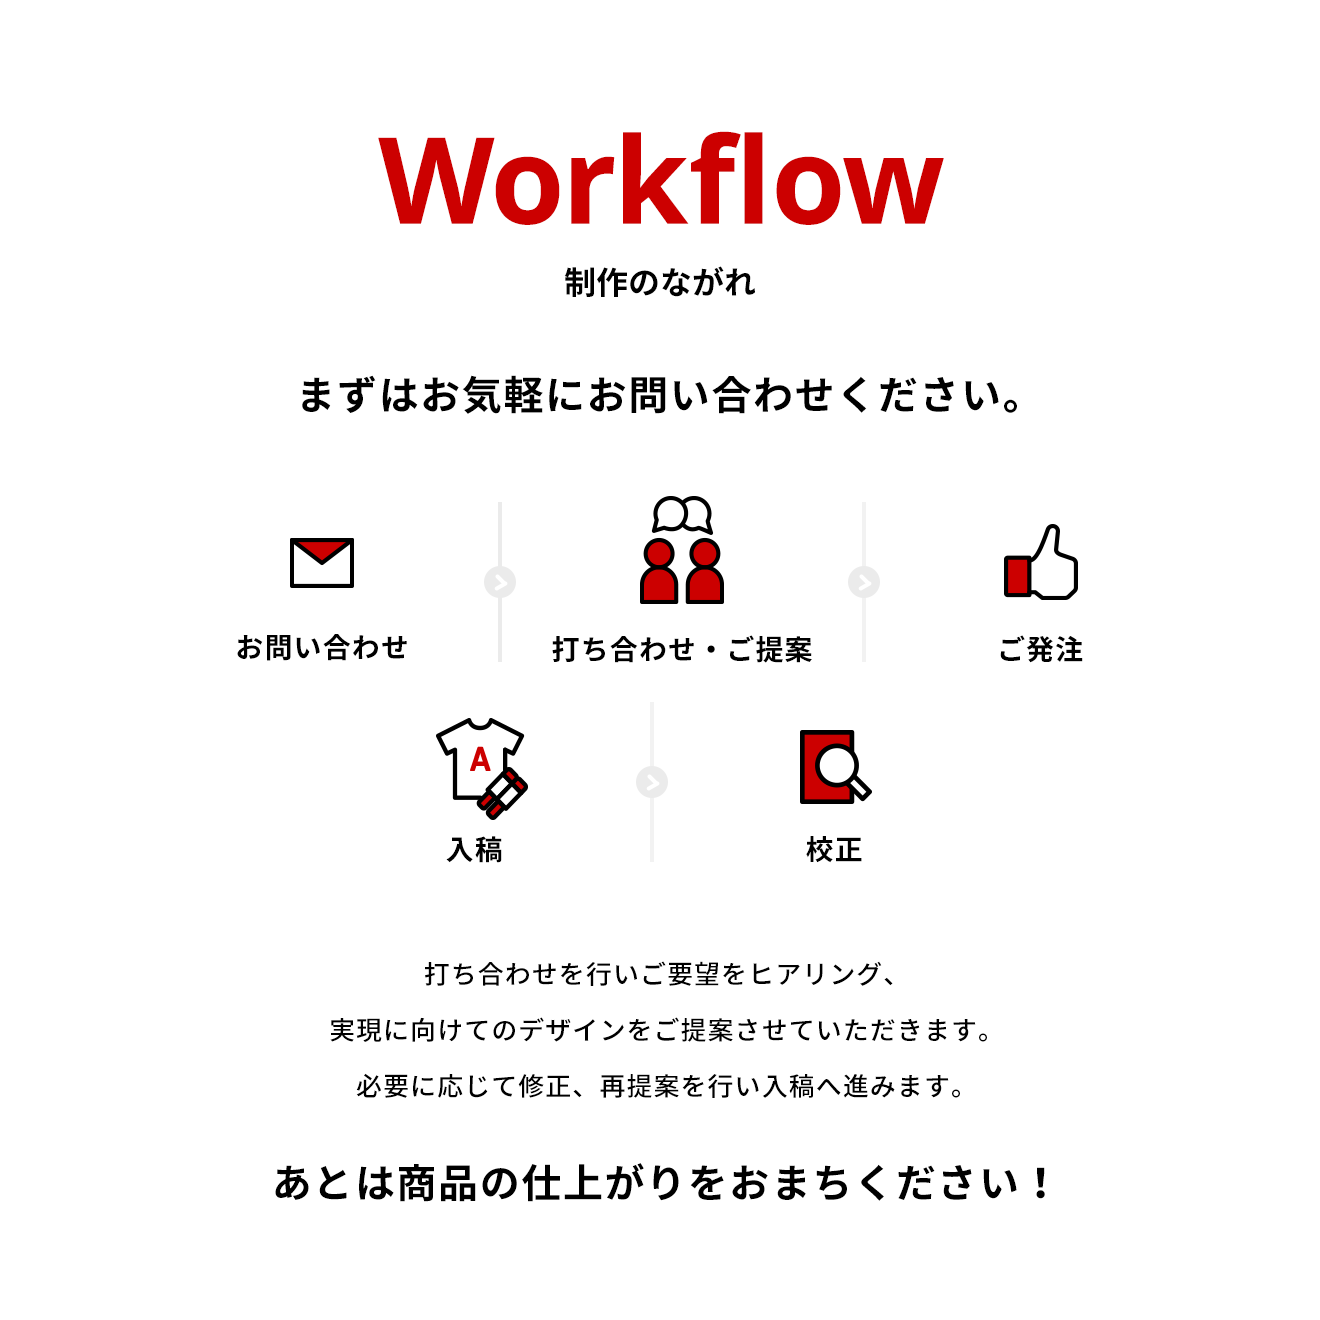 Workflow 制作のながれ まずはお気軽にお問い合わせください。